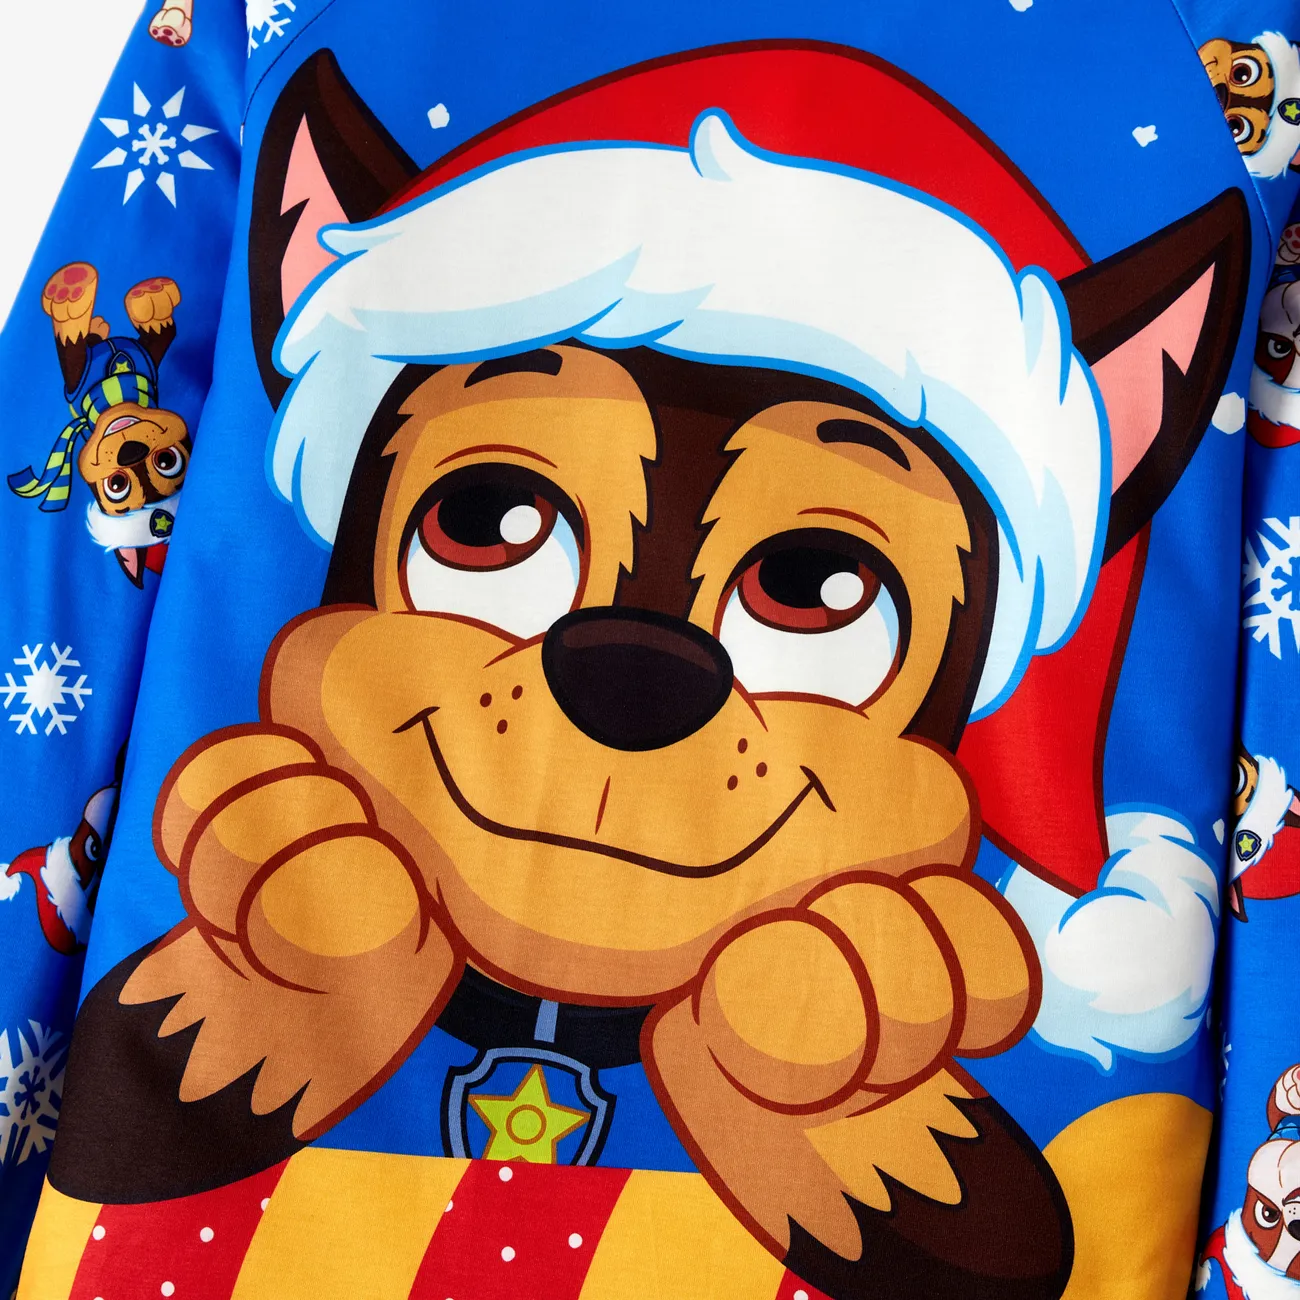 Patrulha Canina Natal Look de família Manga comprida Conjuntos de roupa para a família Pijamas (Flame Resistant) Multicolorido big image 1